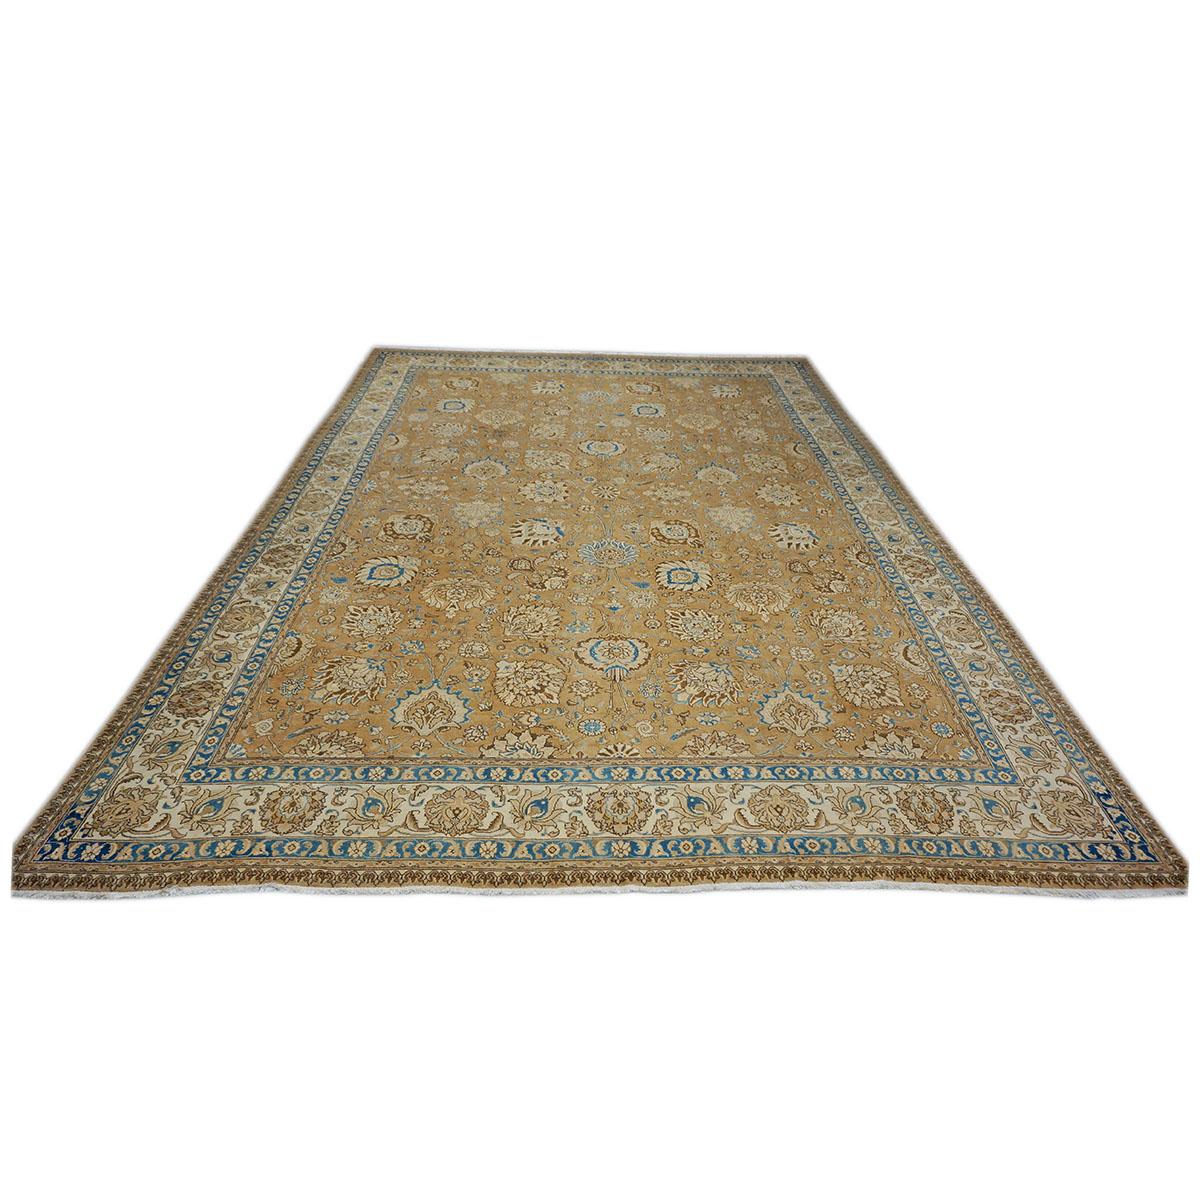  Ashly Fine Rugs präsentiert einen 1940er Jahre antiken persischen Tabriz 11x15 Wolle handgefertigten Teppich. Täbris ist eine Stadt im Norden des heutigen Iran, die seit jeher für die Feinheit und Kunstfertigkeit ihrer handgefertigten Teppiche